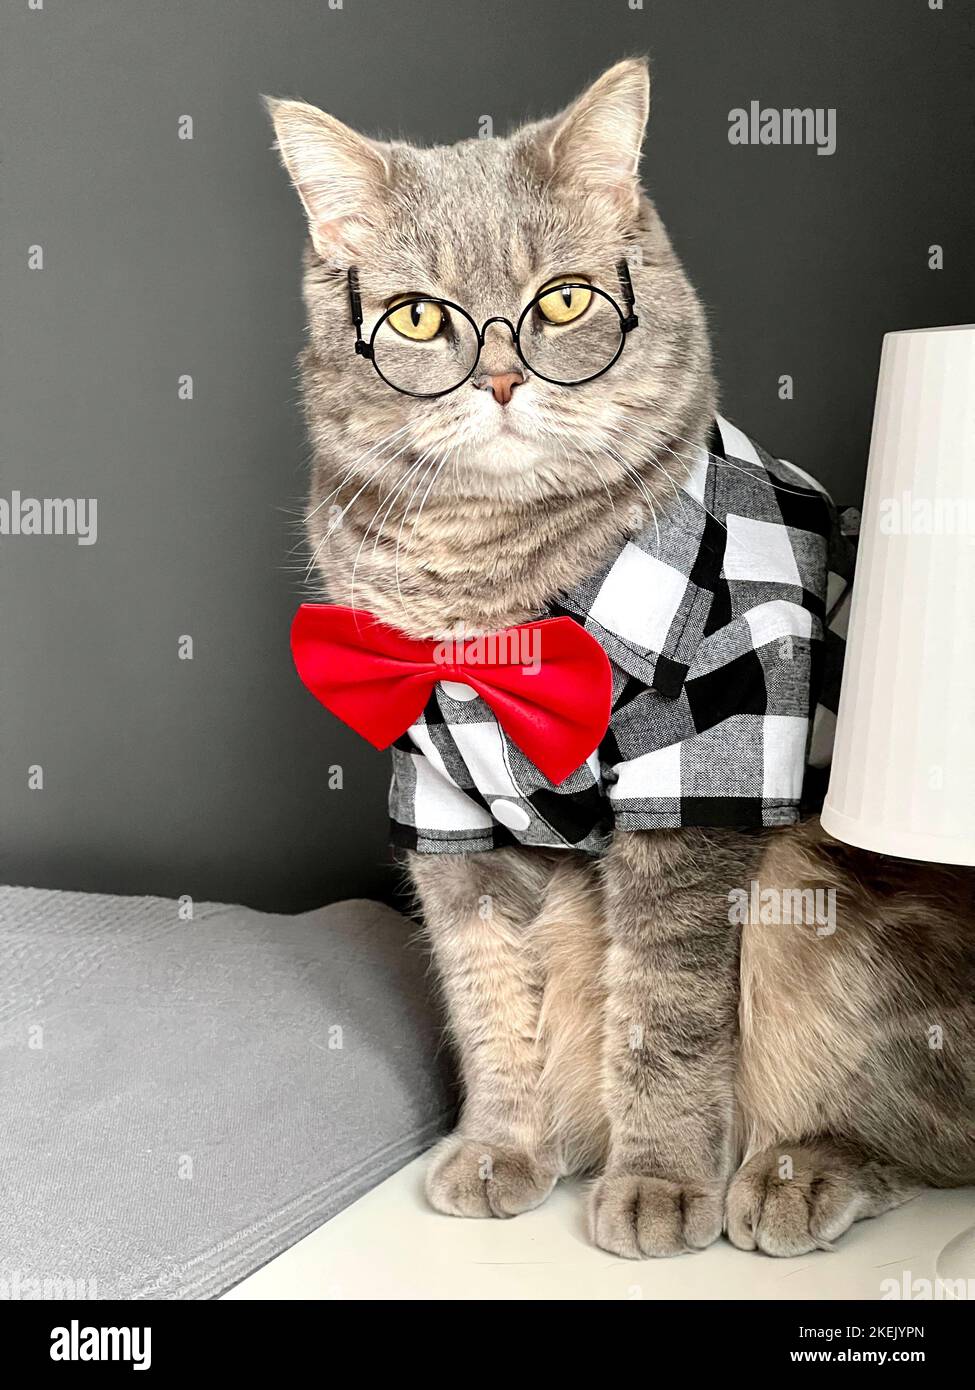 Eine schottische geradohrige graue Katze mit Brille, einem schwarz-weißen Hemd und einer roten Krawatte sieht an den Feiertagen wie ein Gentleman aus. Haustiere in einem gemütlichen, modernen Apartment Stockfoto